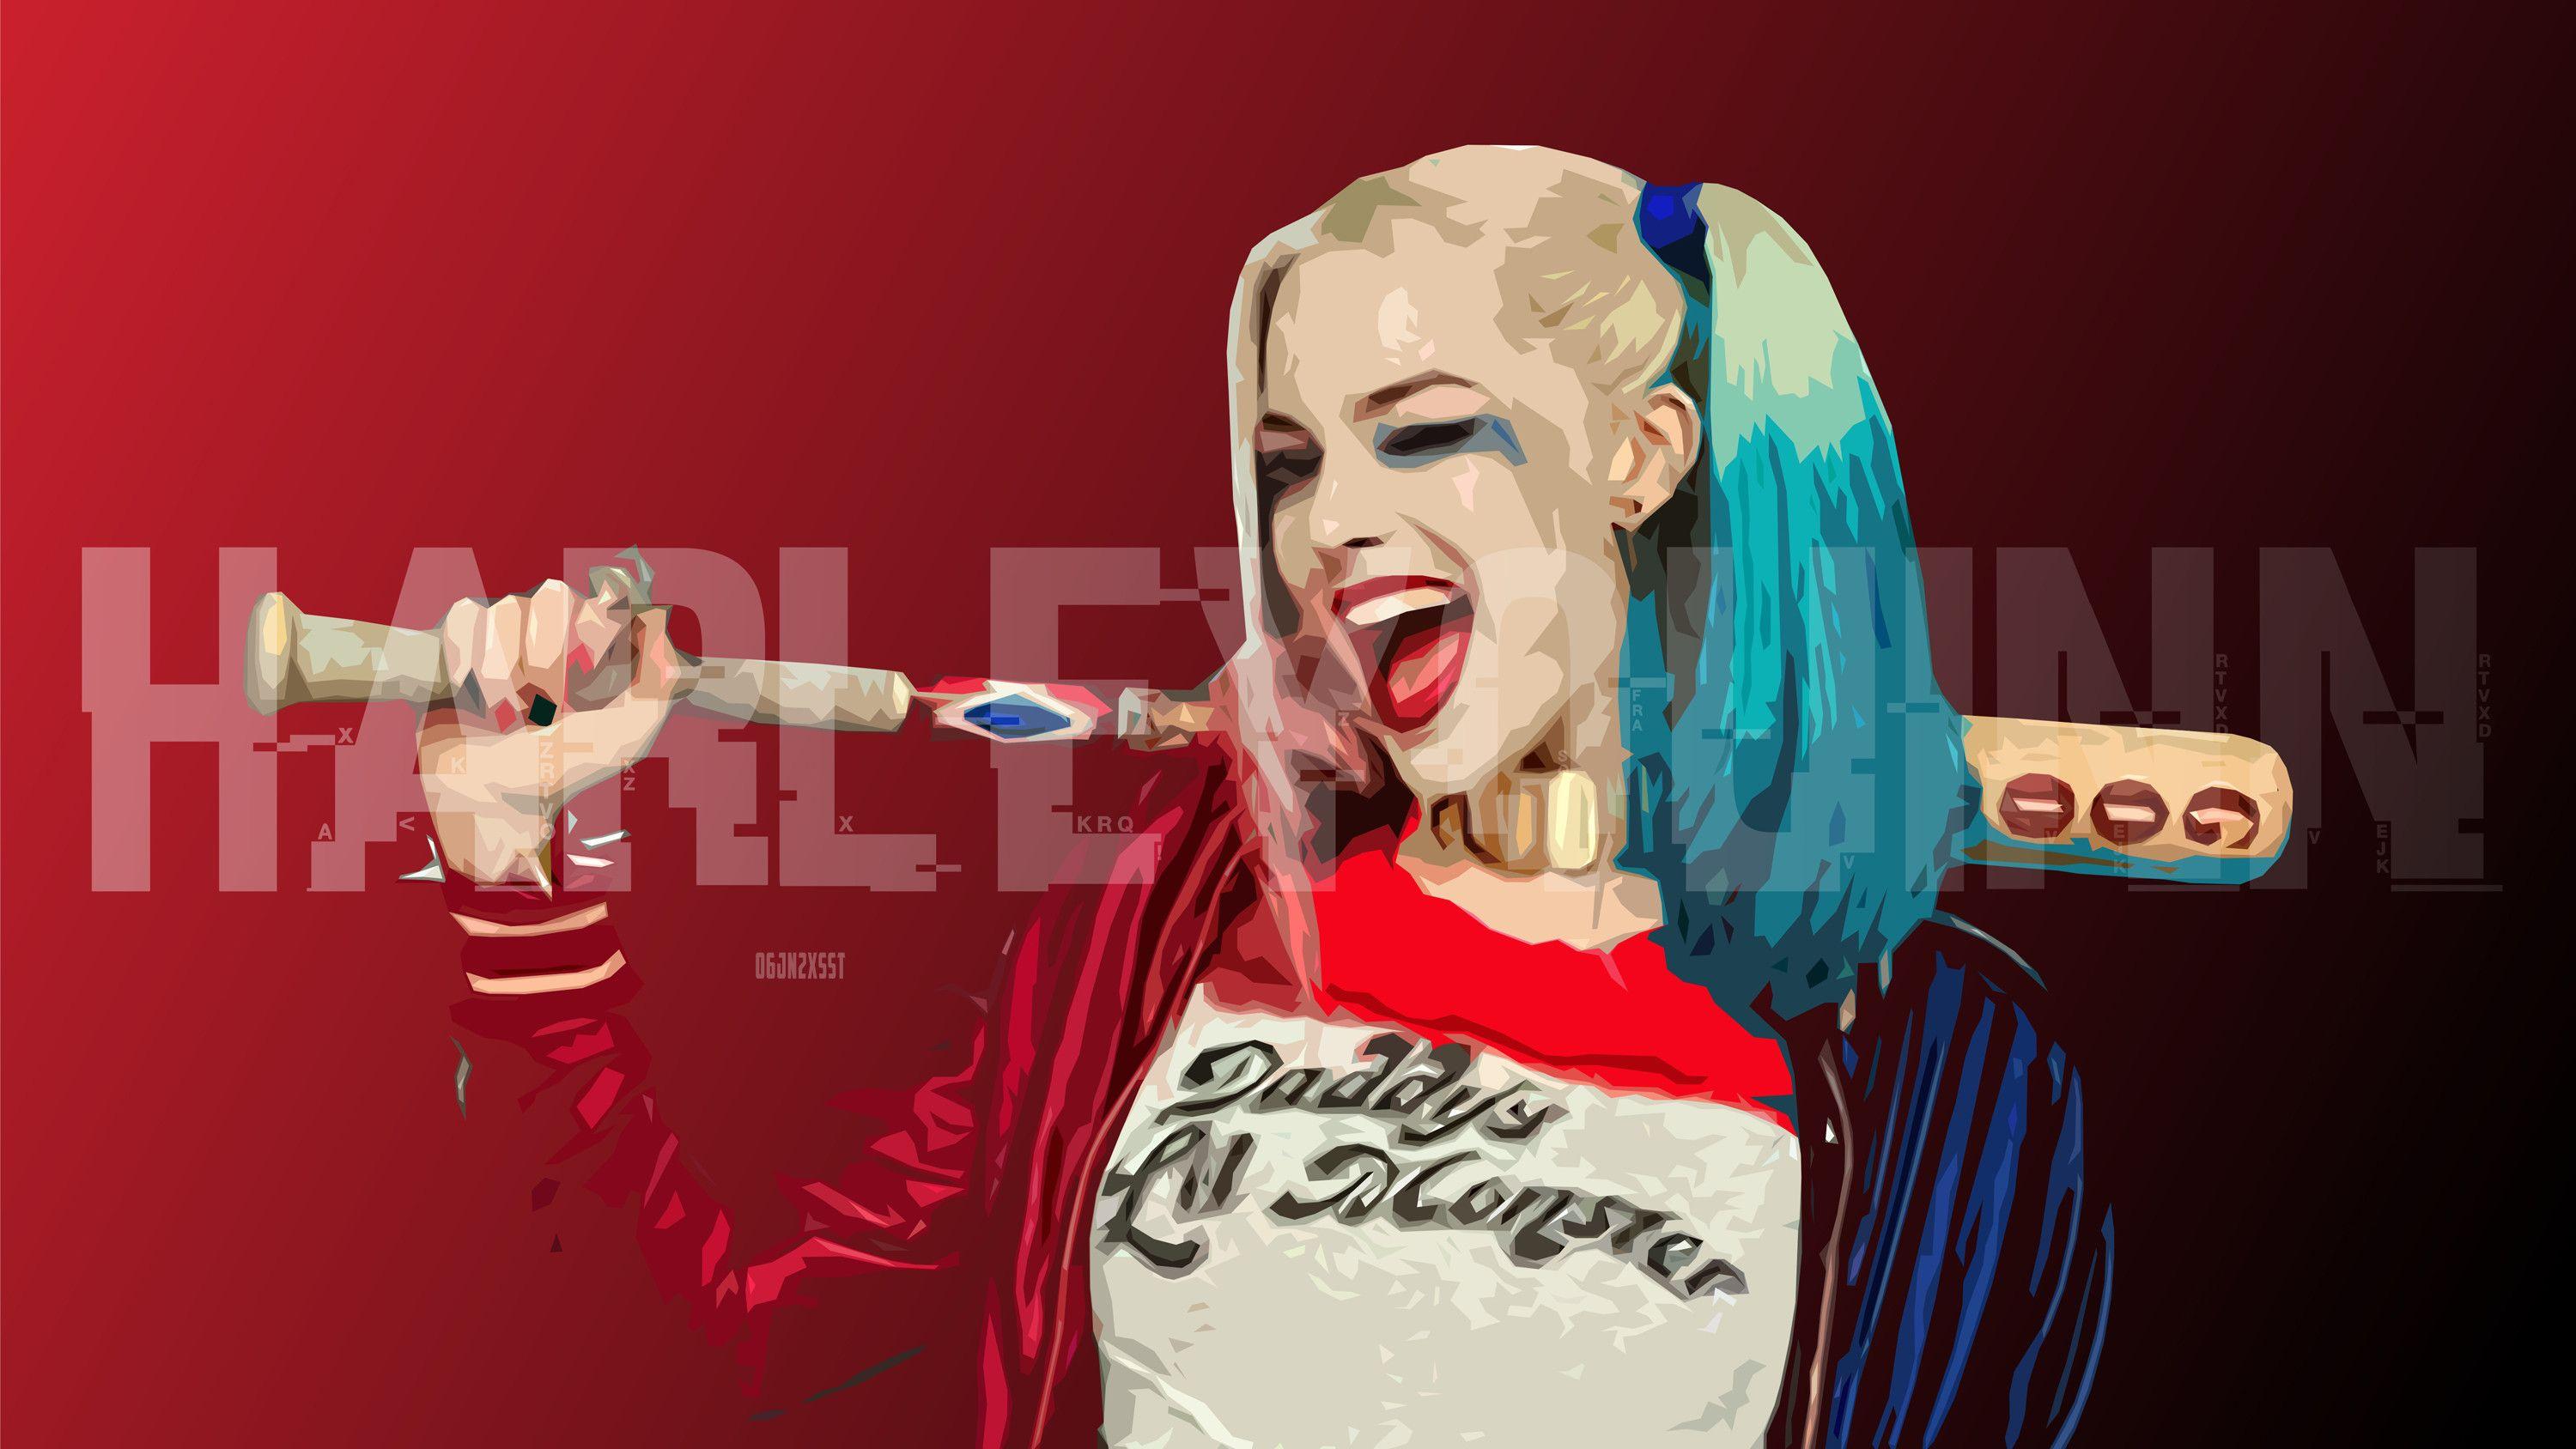 Margot Robbie Harley Quinn Wallpaper background picture